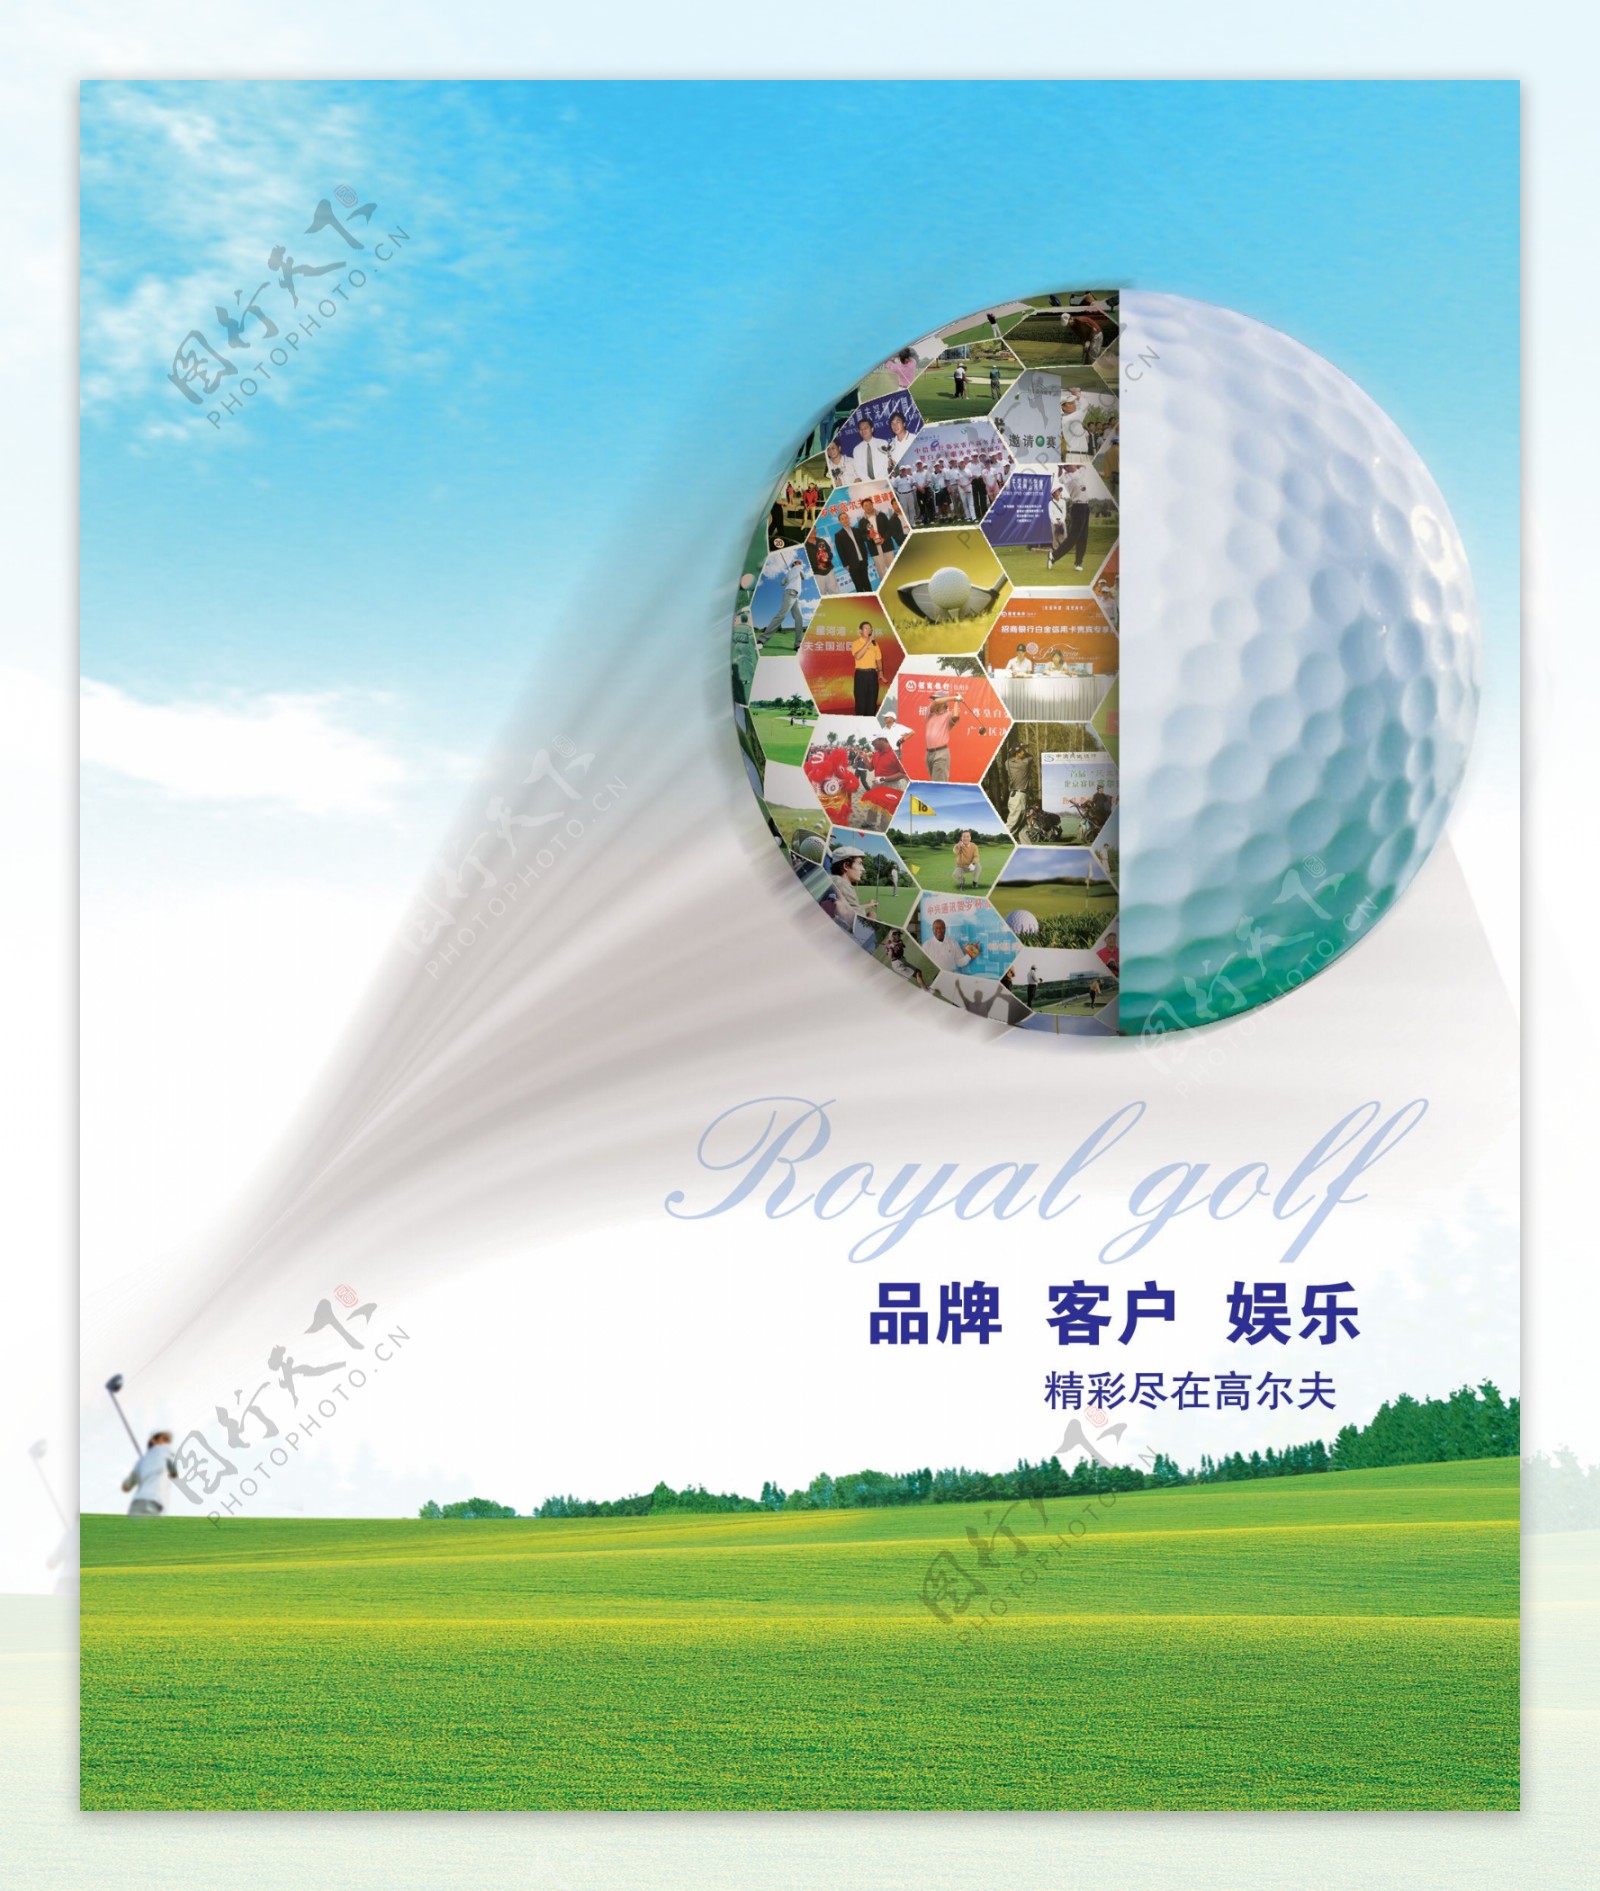 高尔夫球品牌形象海报PSD分